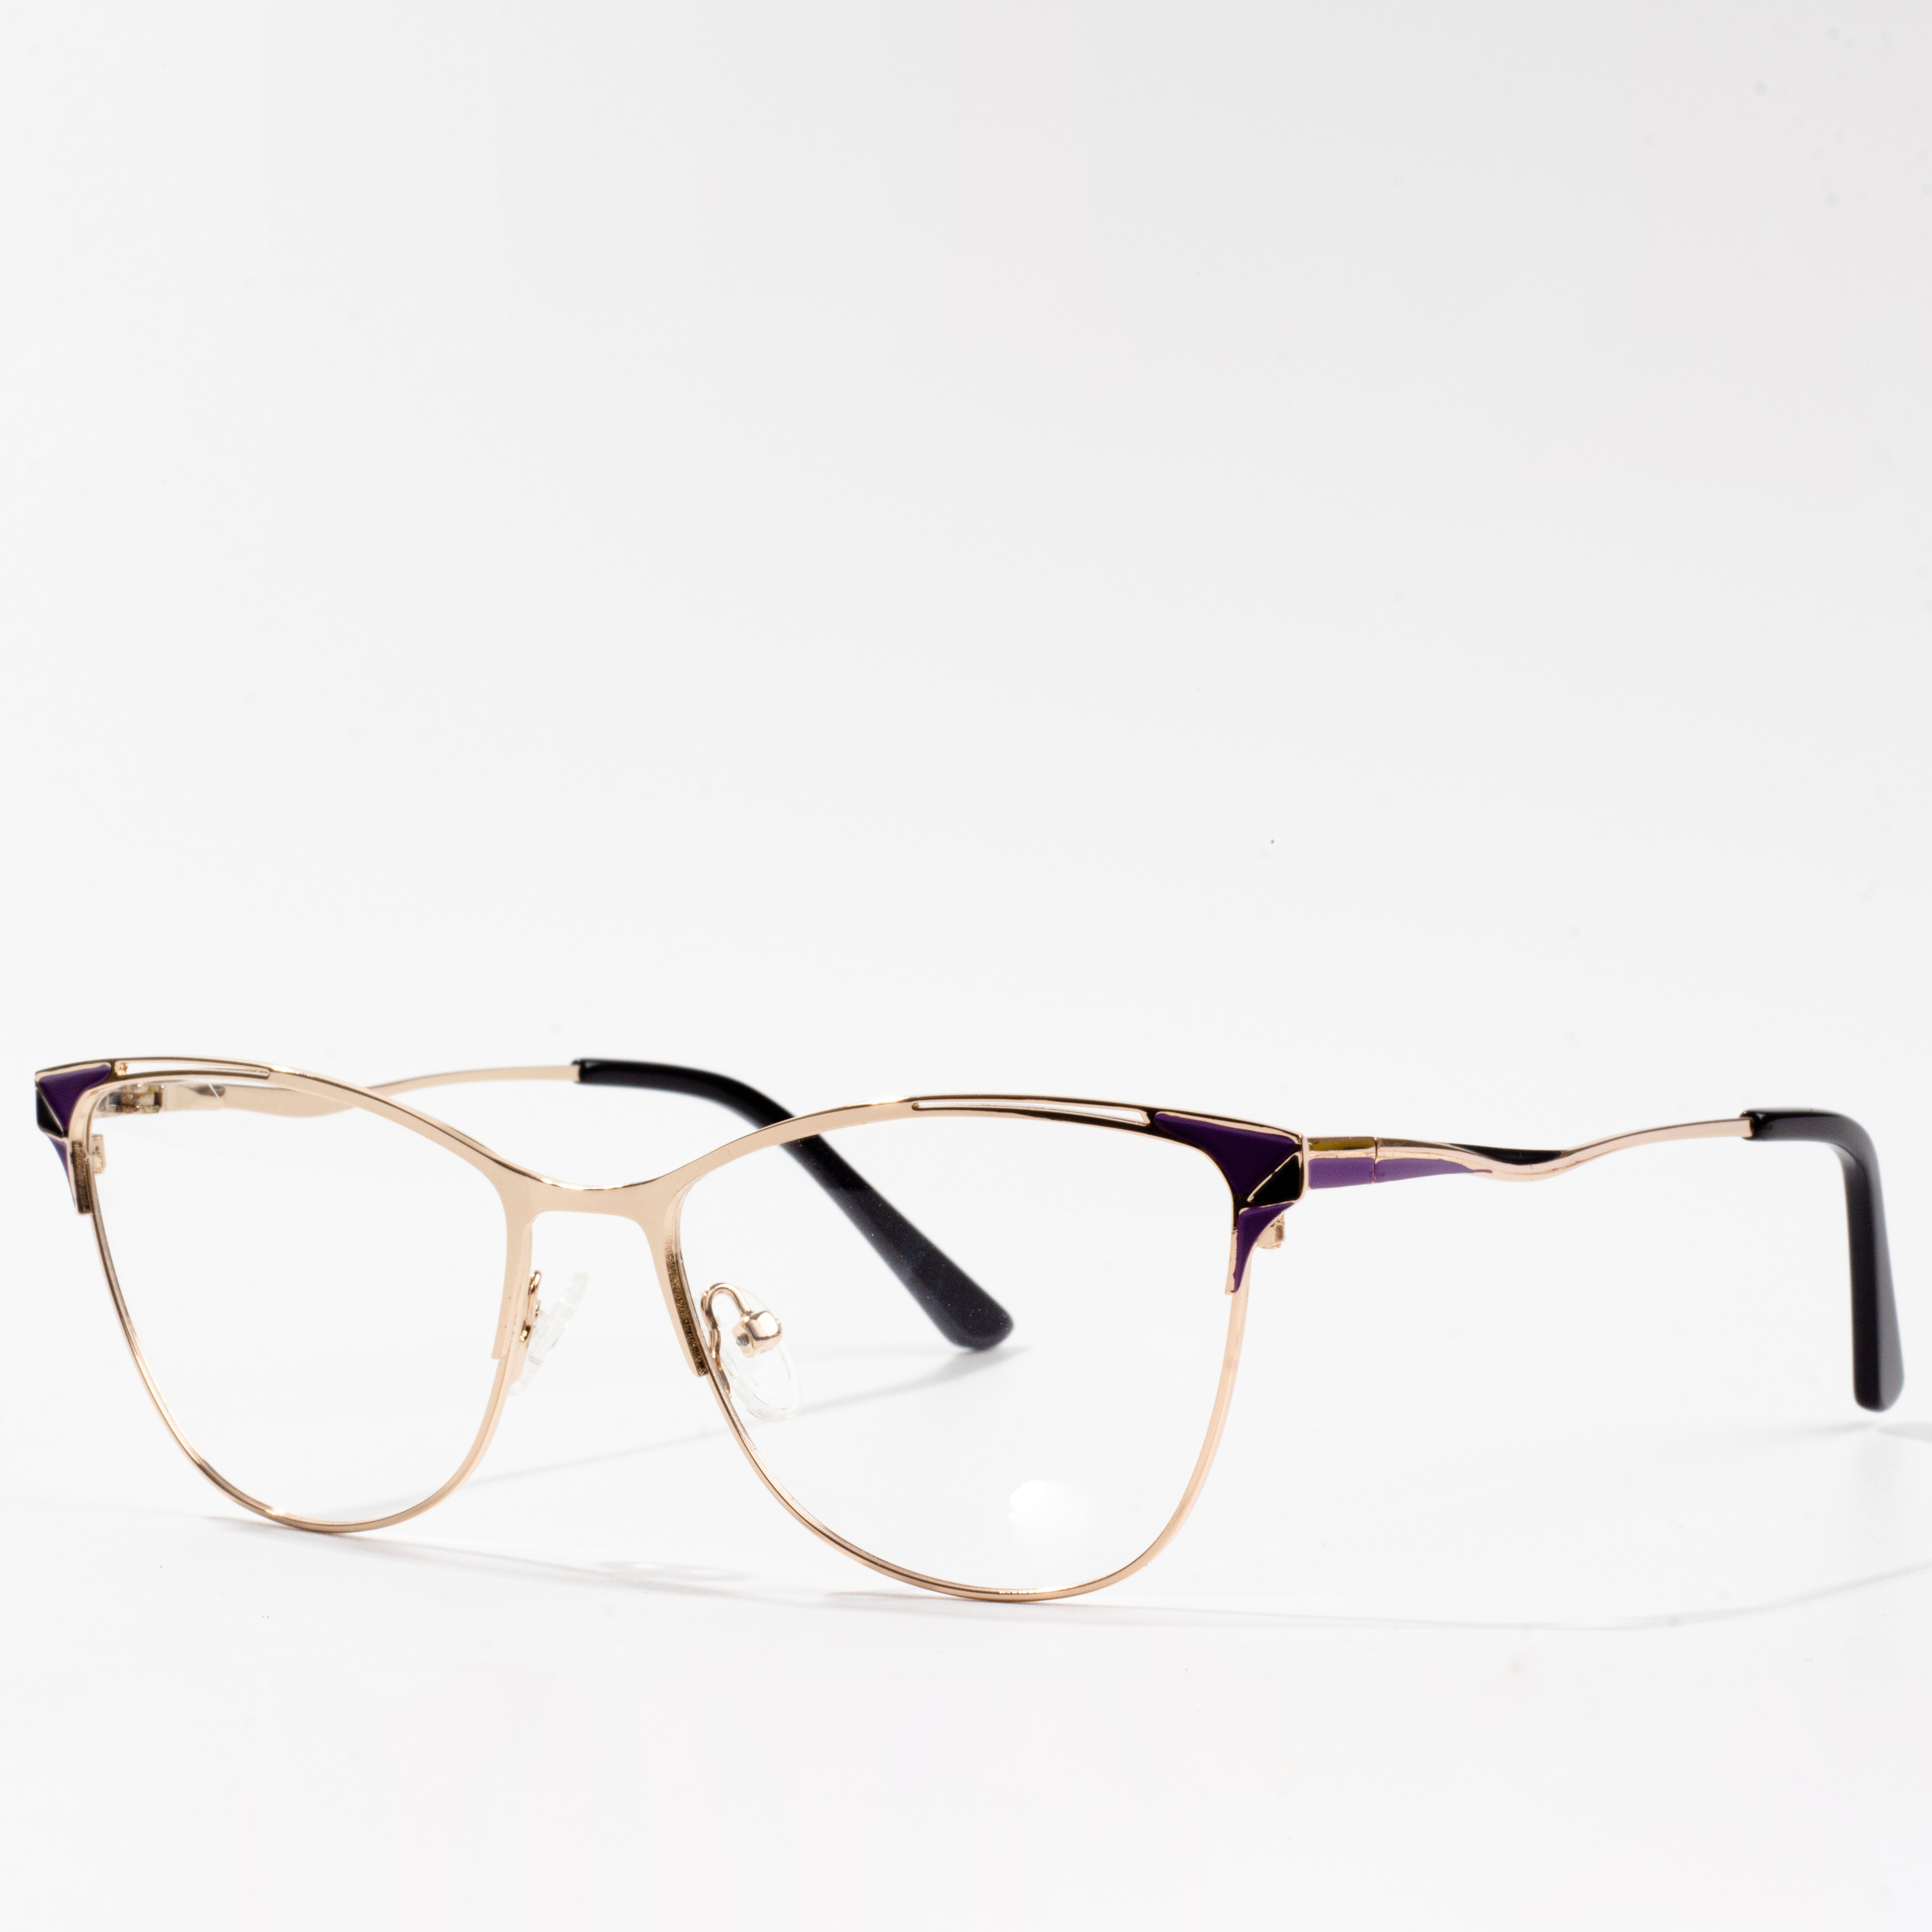 eyeglass frames retro